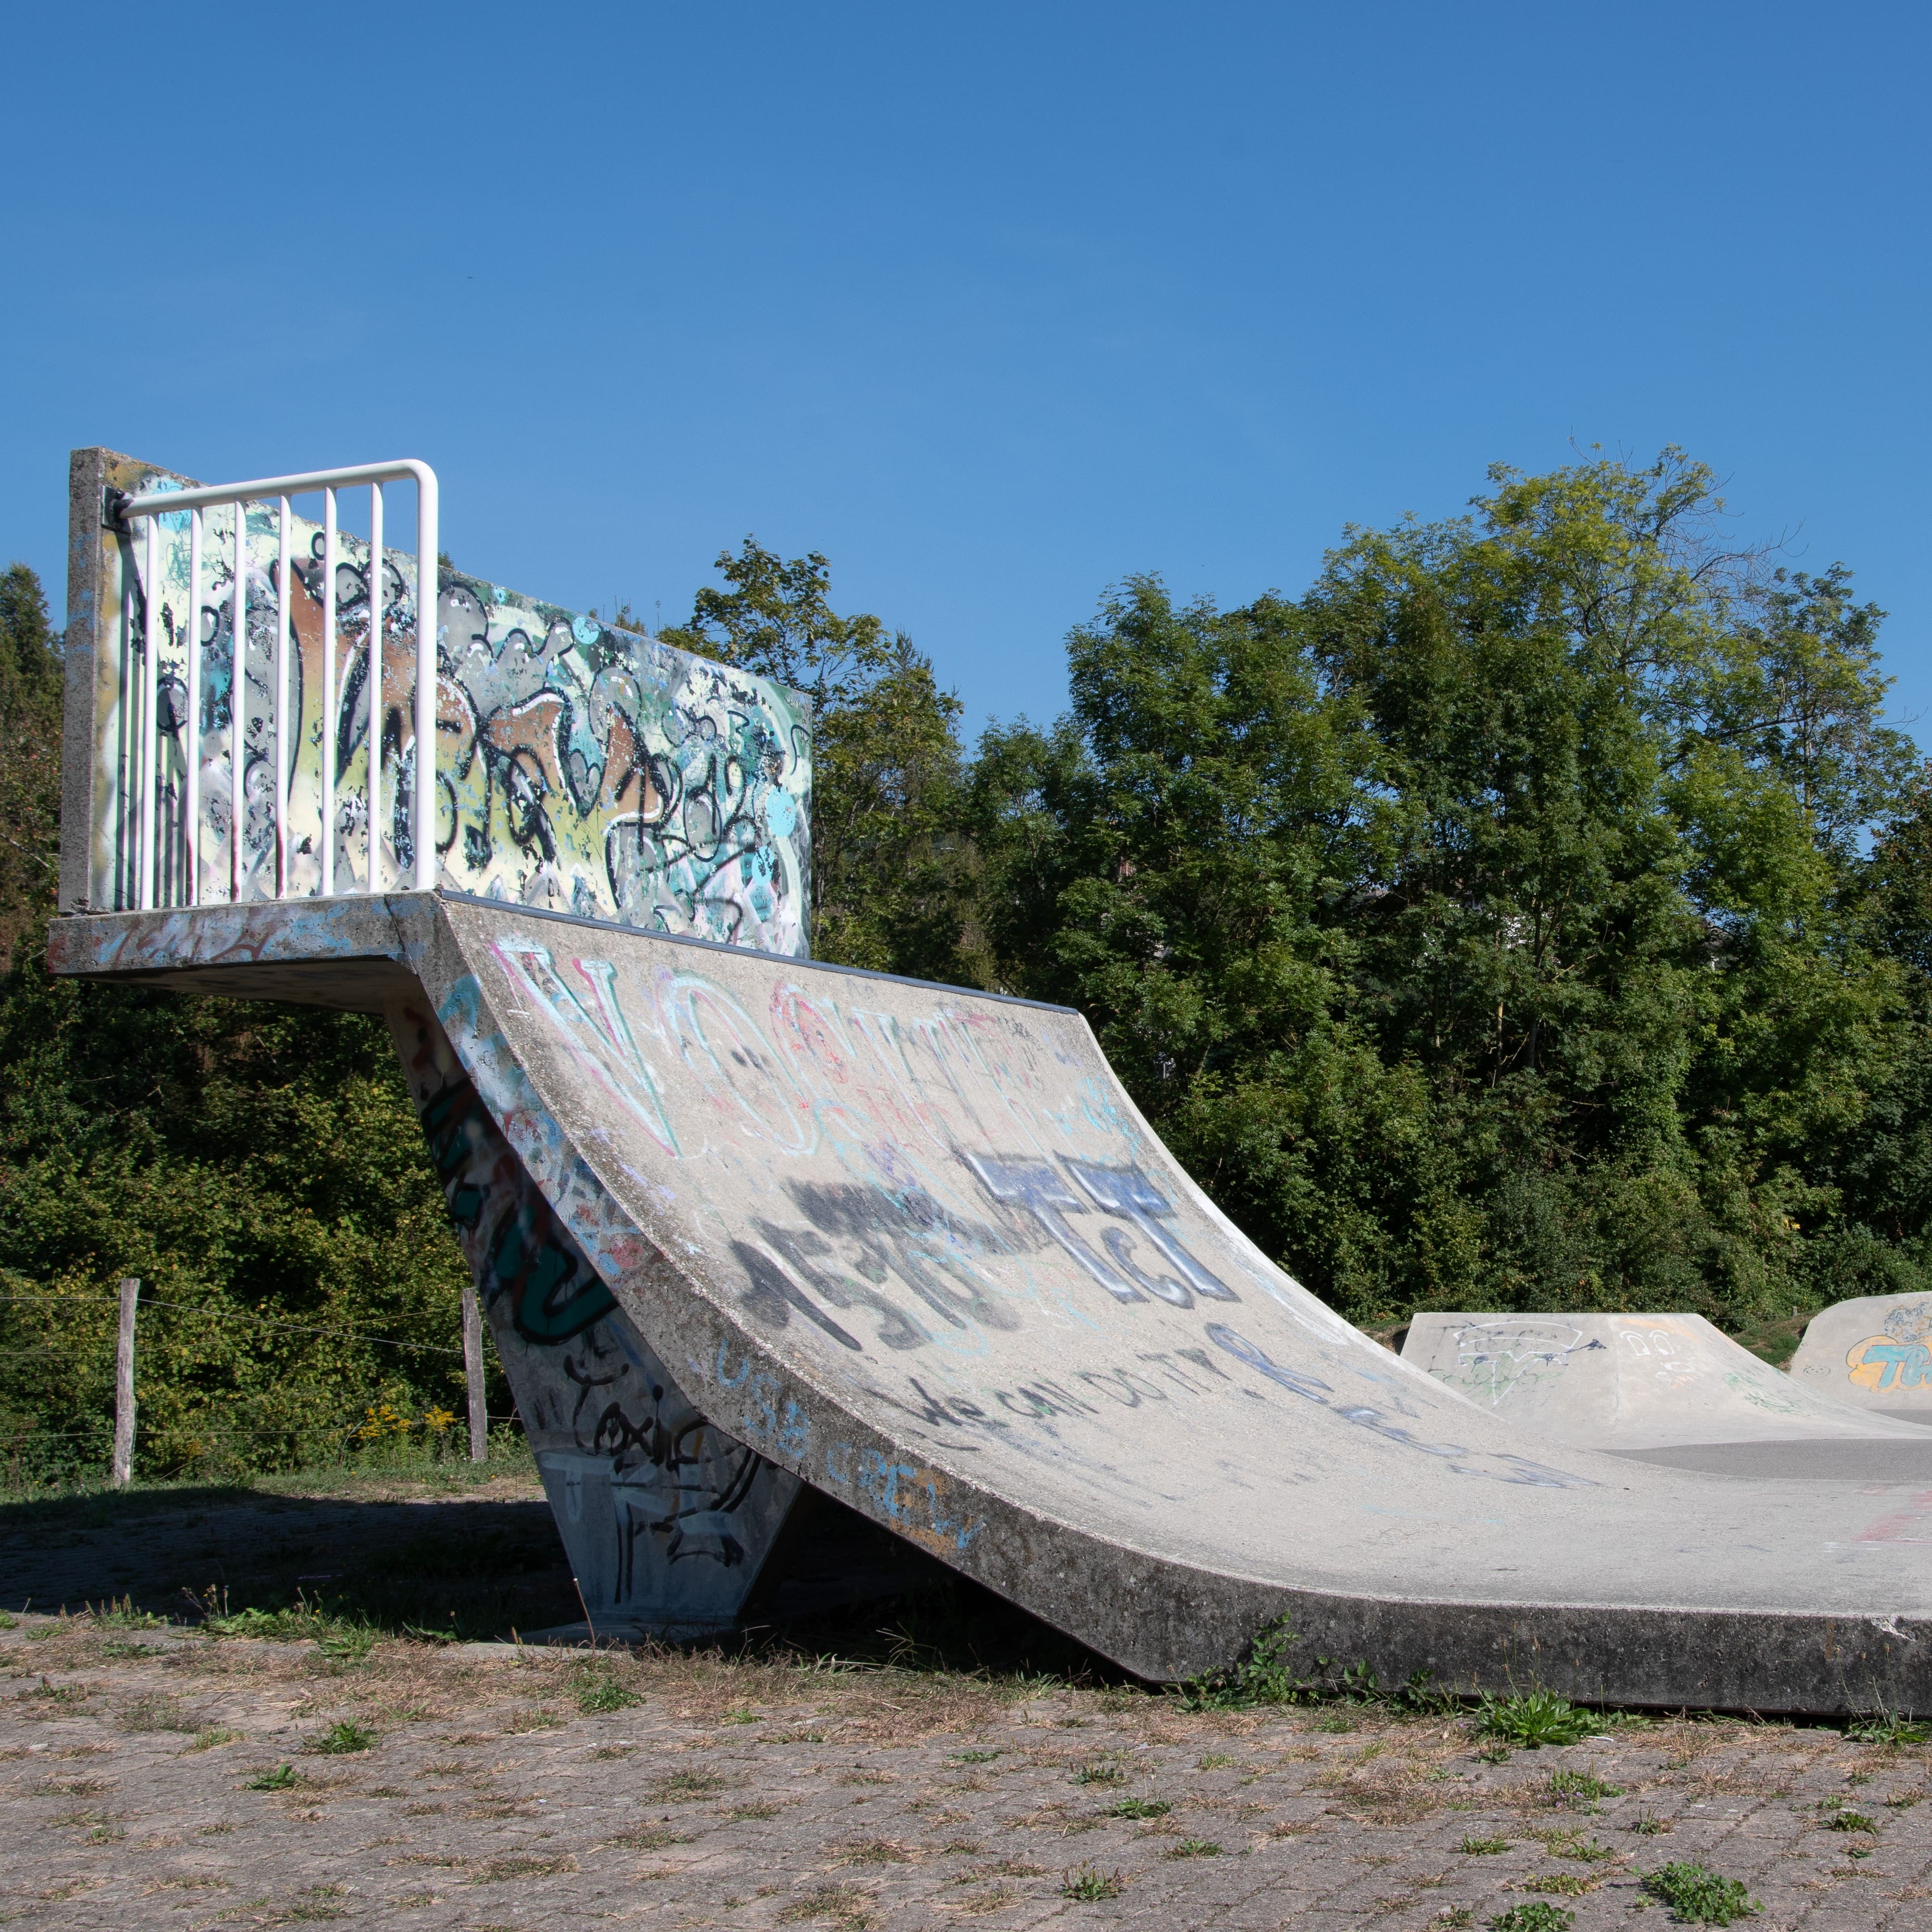 The Skatepark